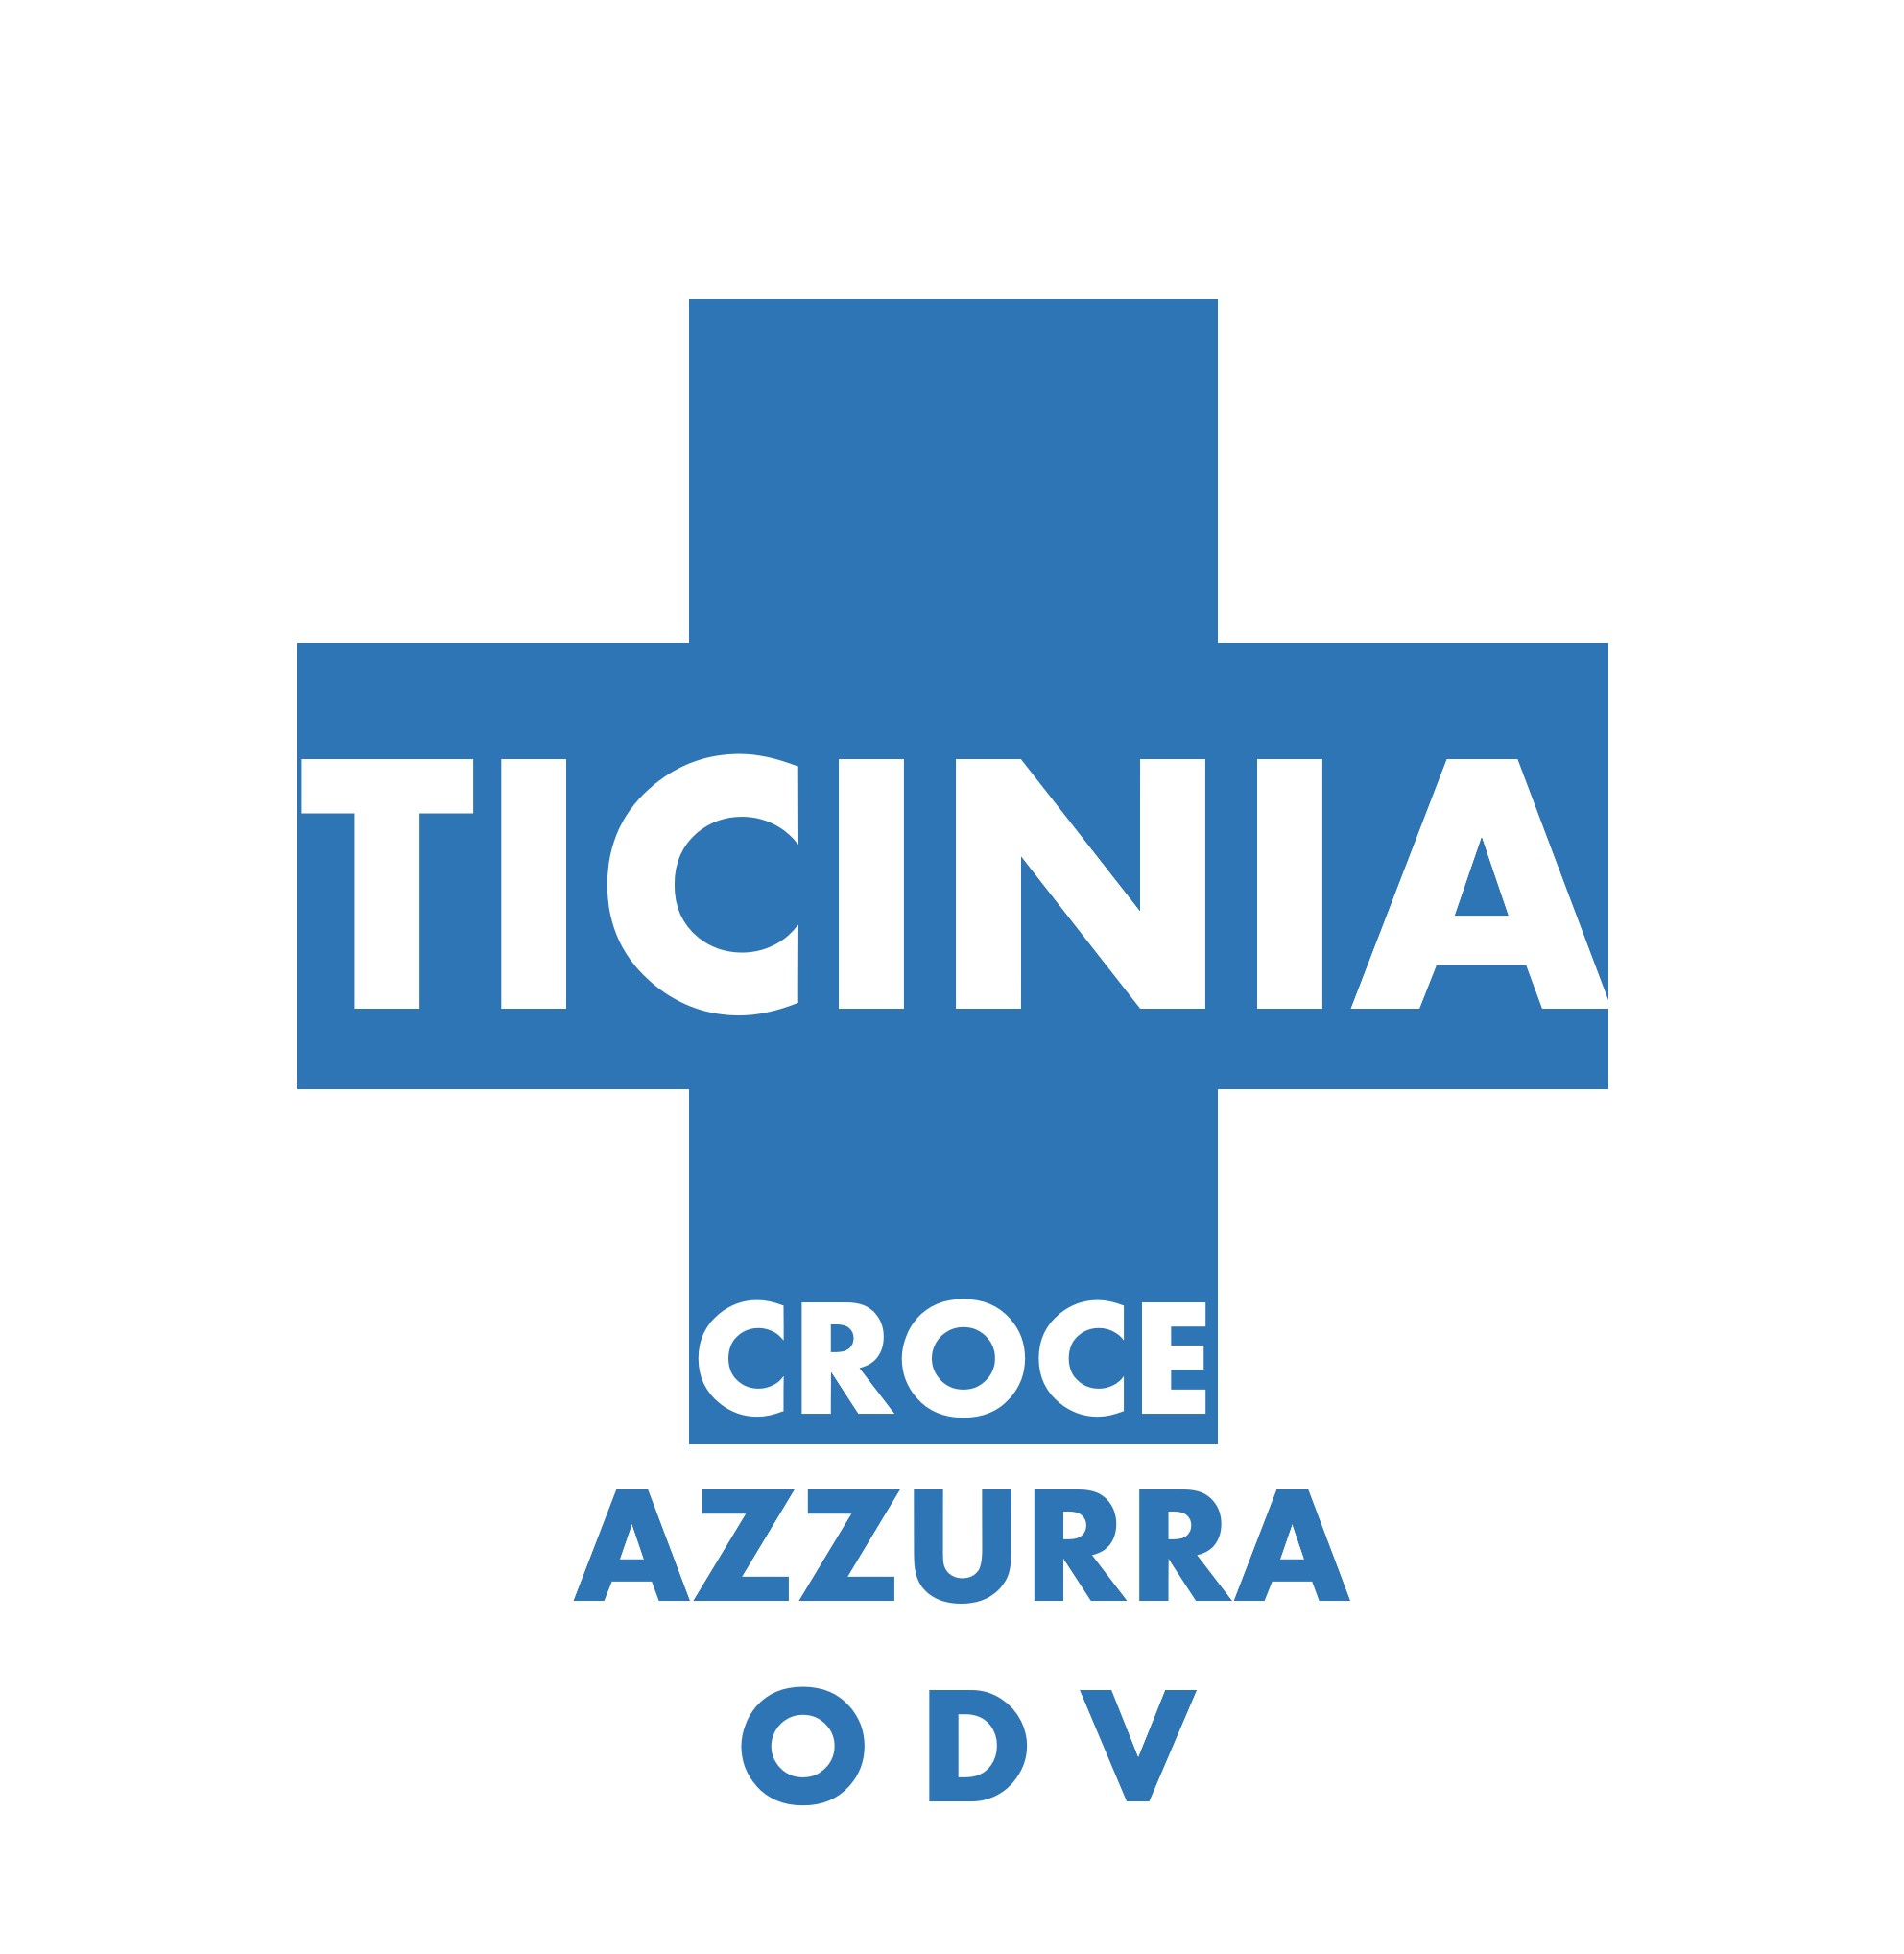 Archivio Storico Croce Azzurra Ticinia - Croce Azzurra Ticinia ODV - 2013 - Riconoscimento Personalità Giuridica